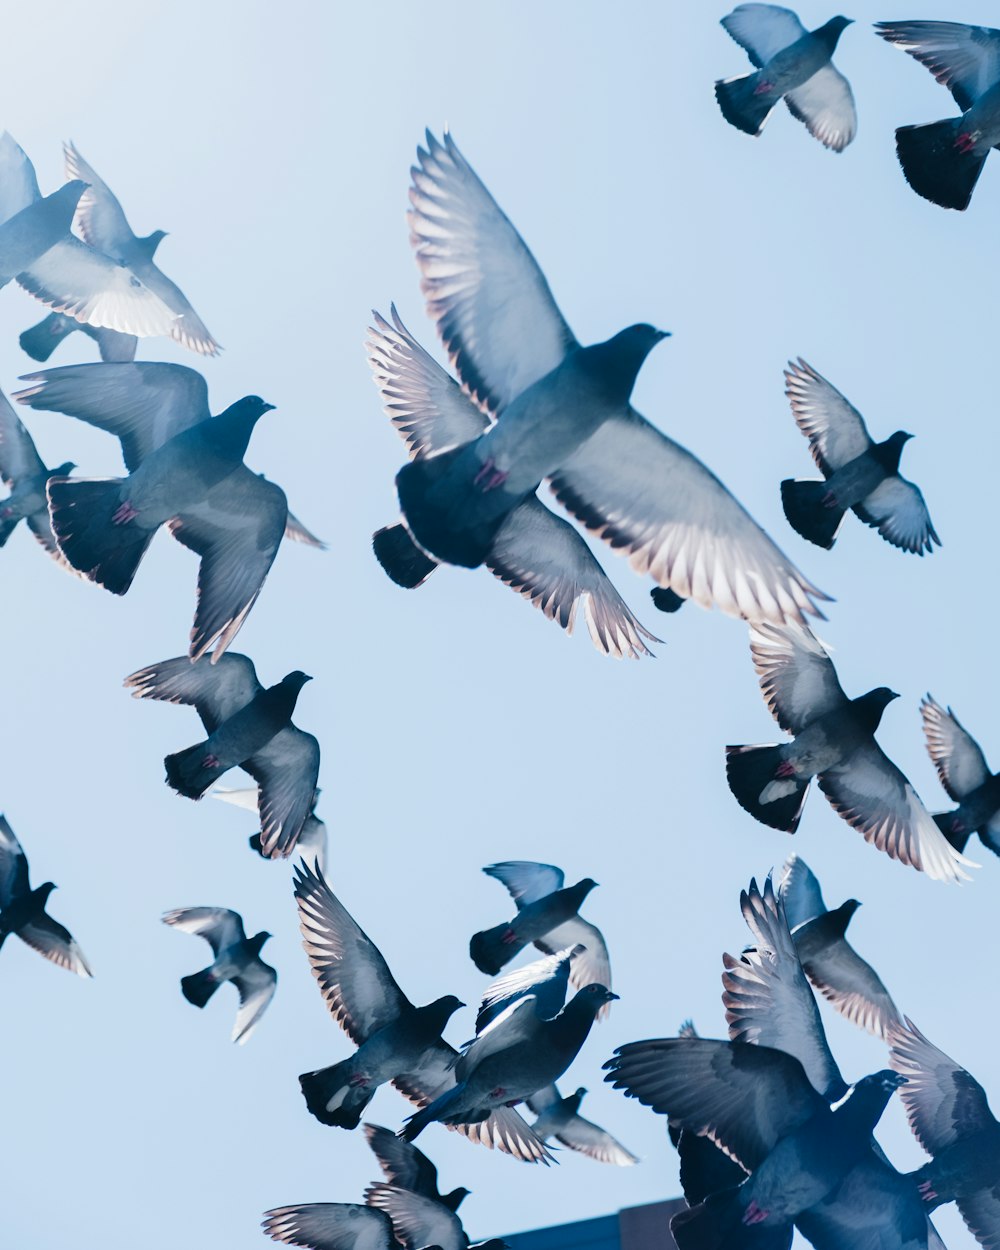 piccioni grigi che volano sotto il cielo azzurro